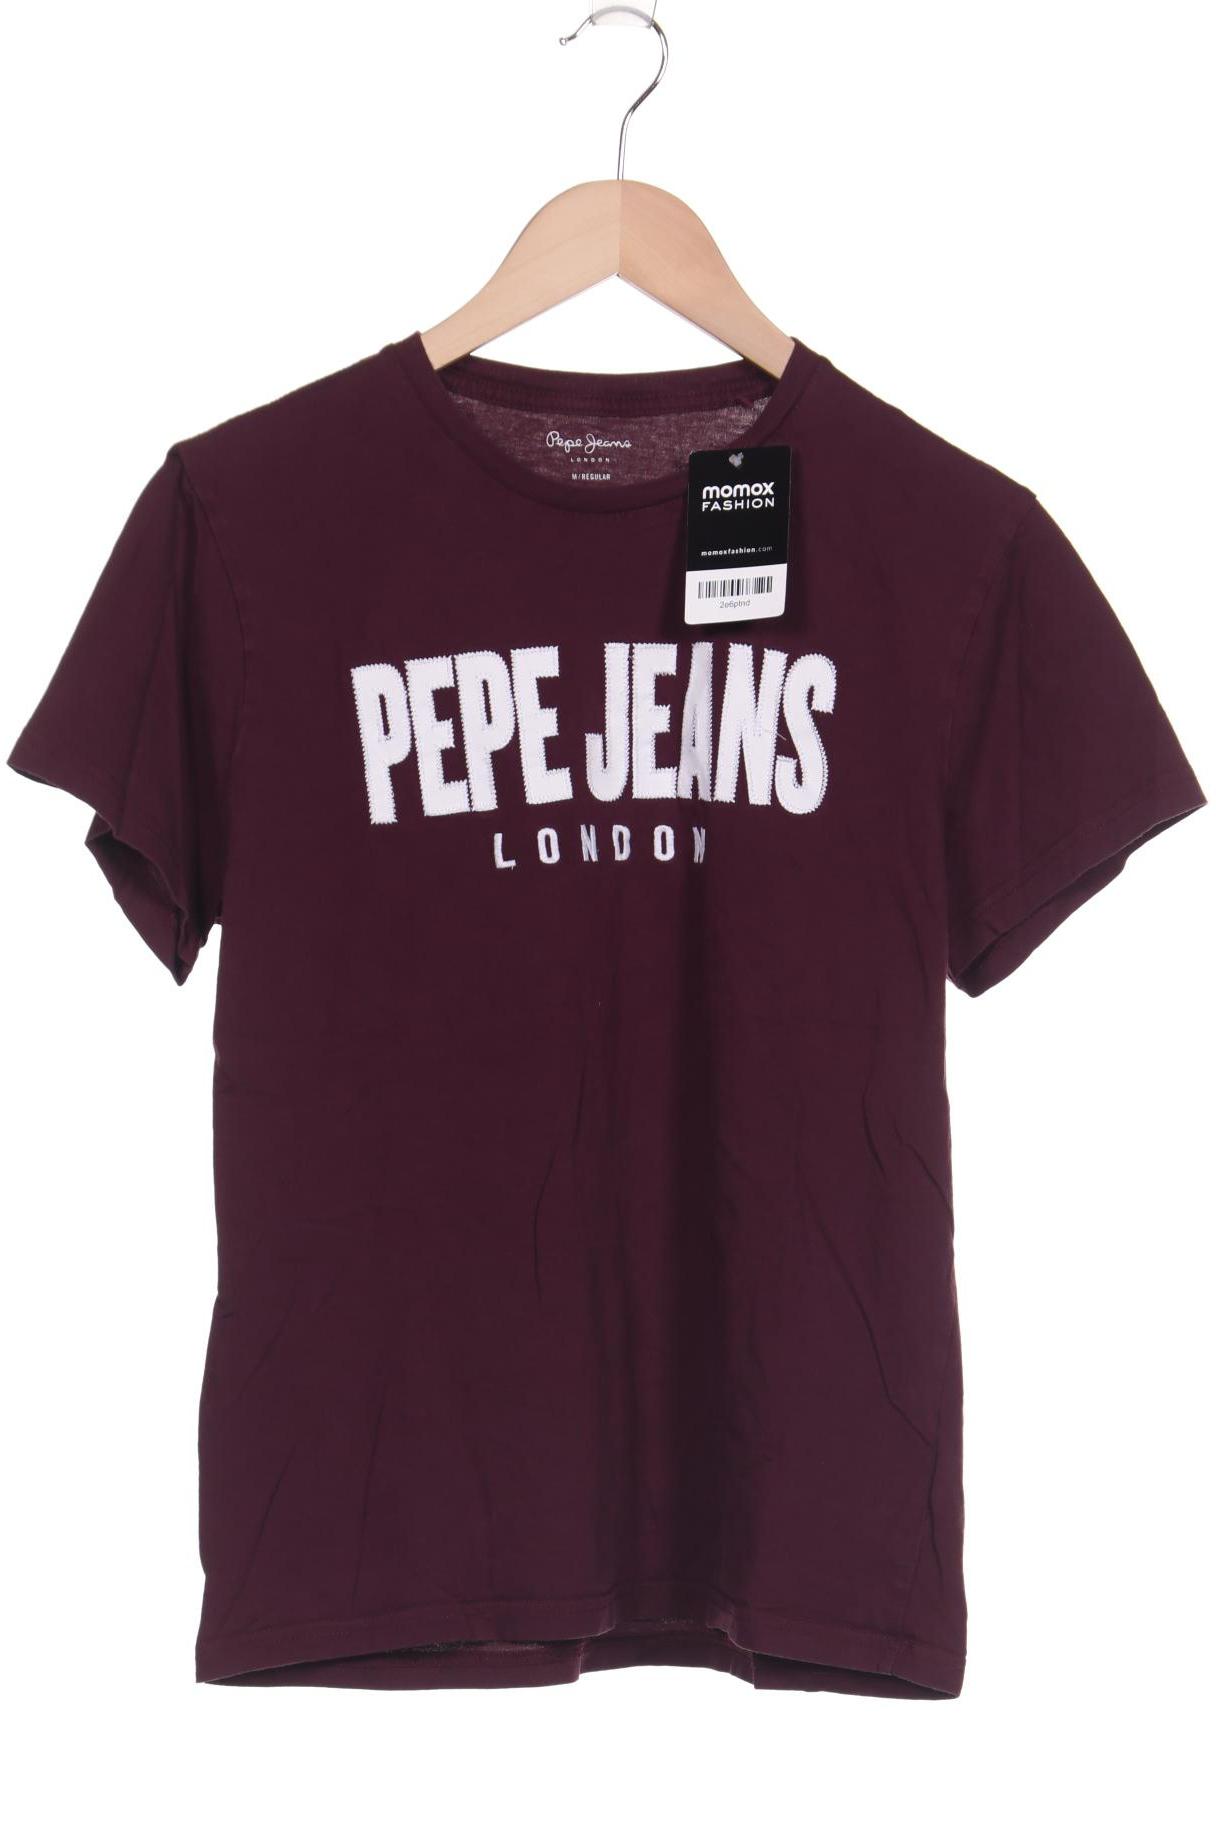 Pepe Jeans Herren T-Shirt, bordeaux von Pepe Jeans